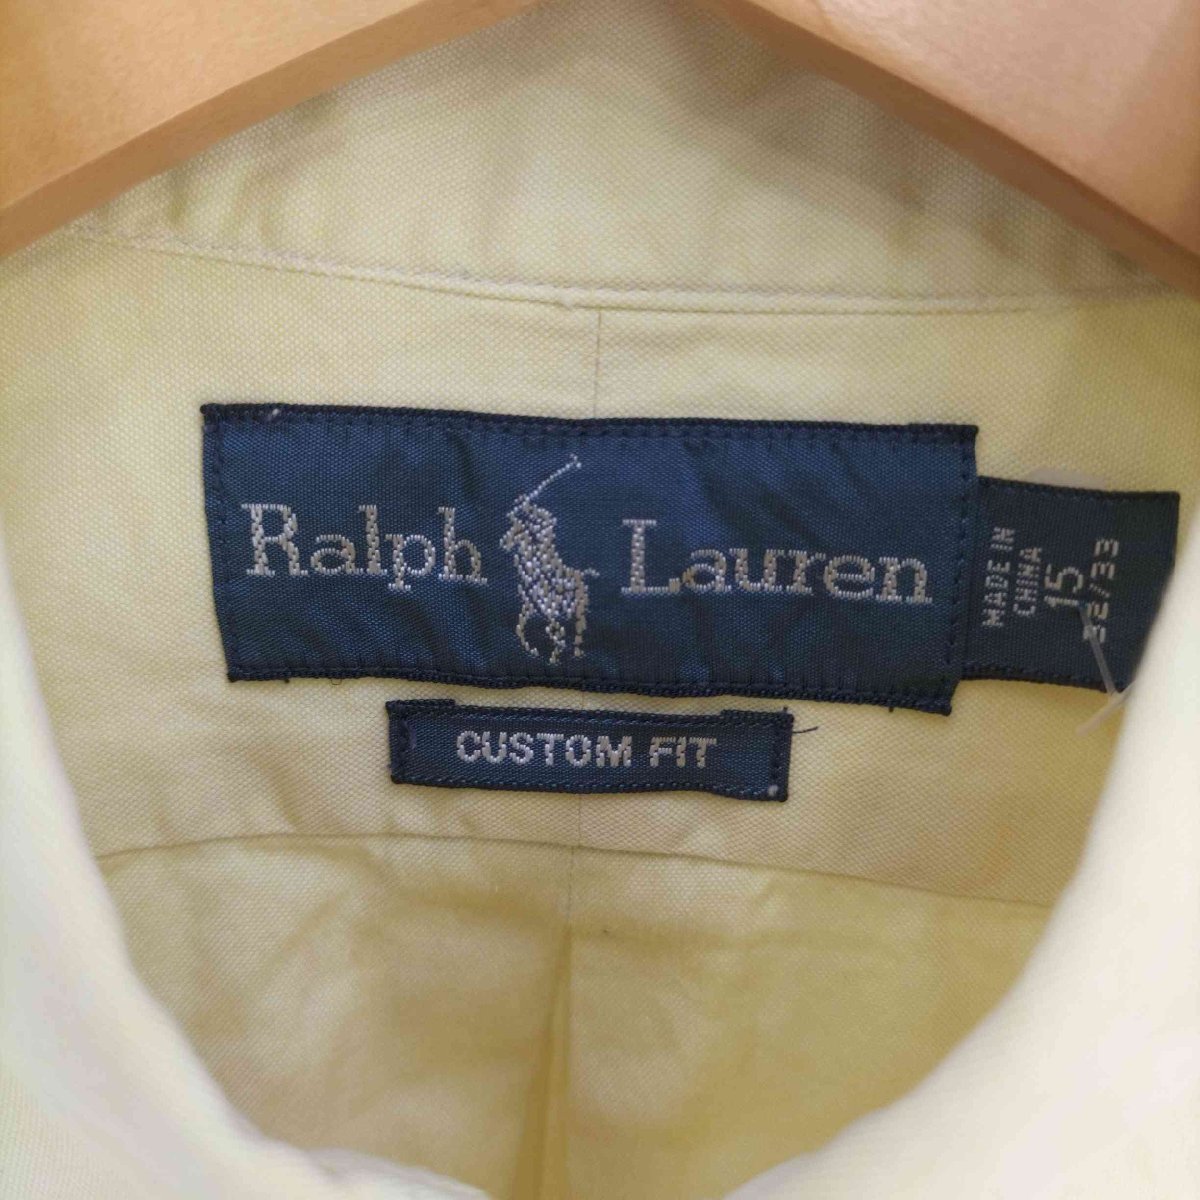 RALPH LAUREN(ラルフローレン) CUSTOM FIT ポニー刺繍 ボダンダウンシャツ メンズ 中古 古着 0348_画像6